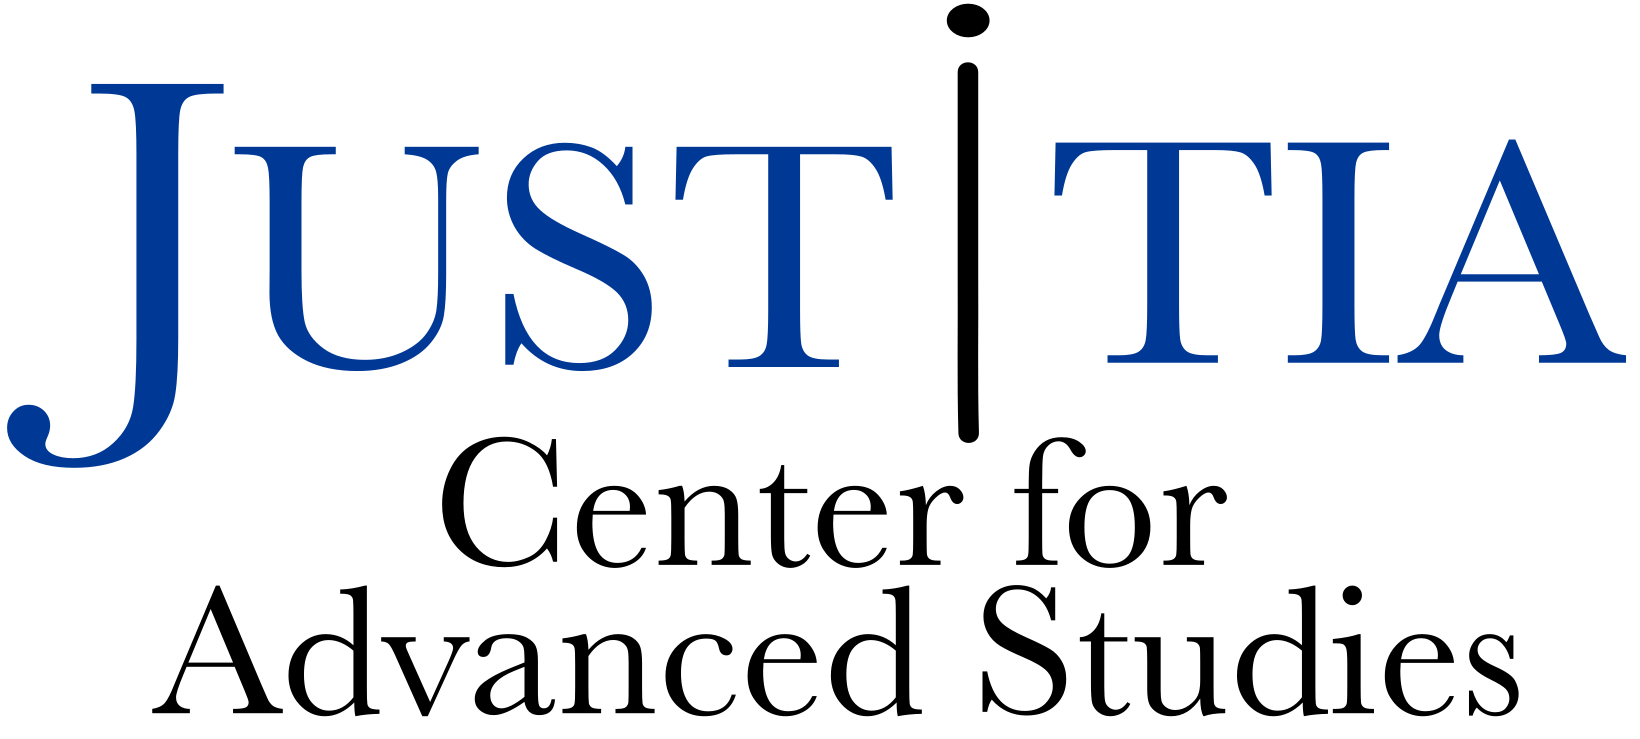 Justitia logo final  au